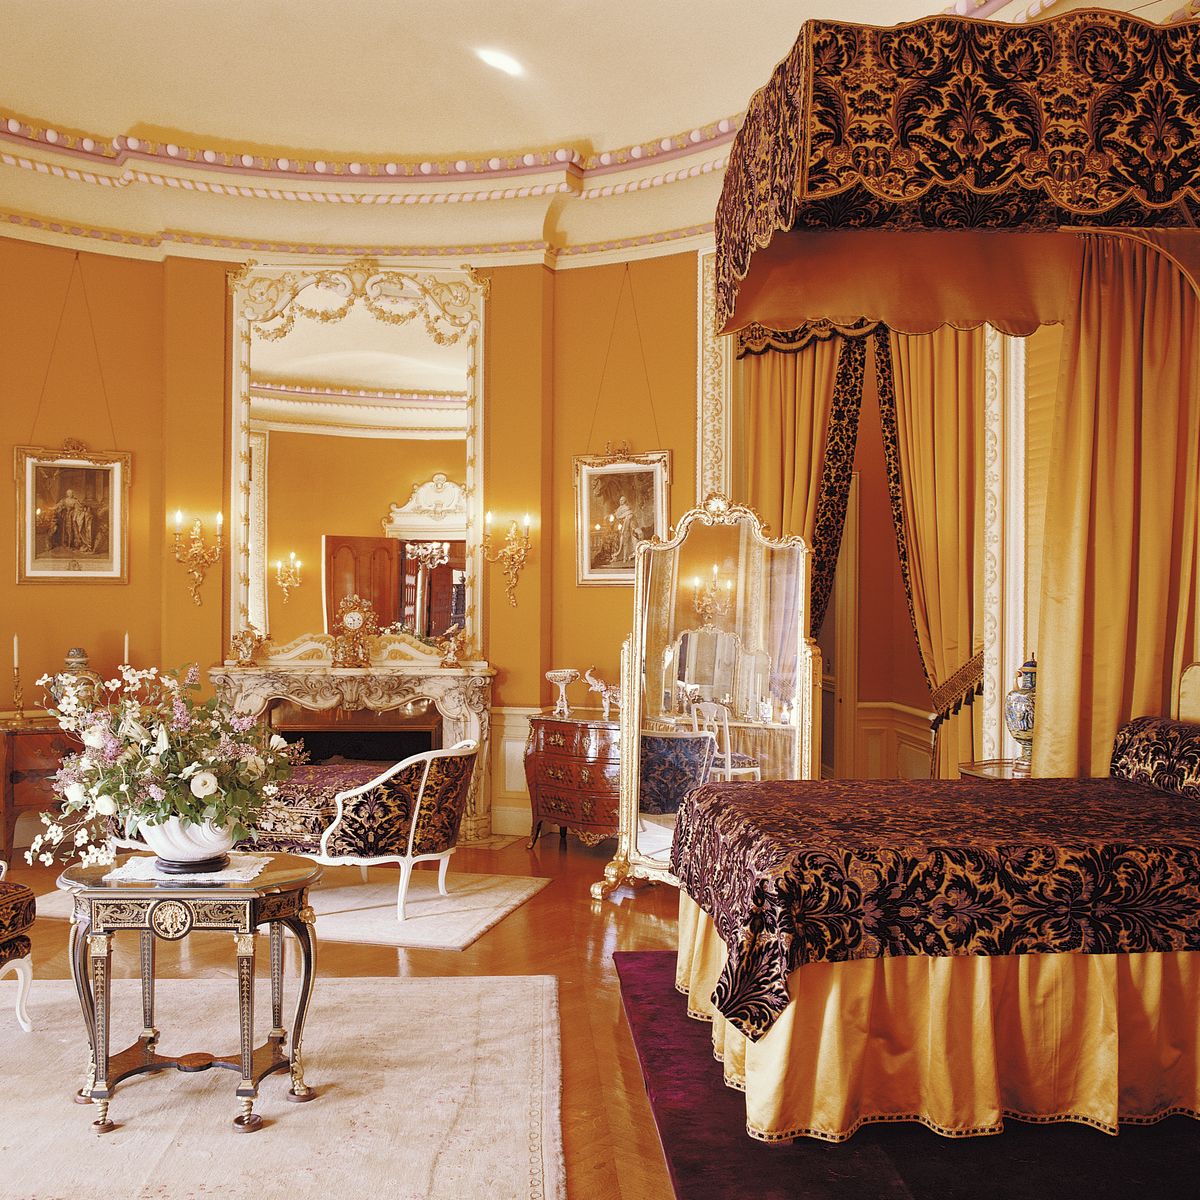 Edith Vanderbilt's Bedroom